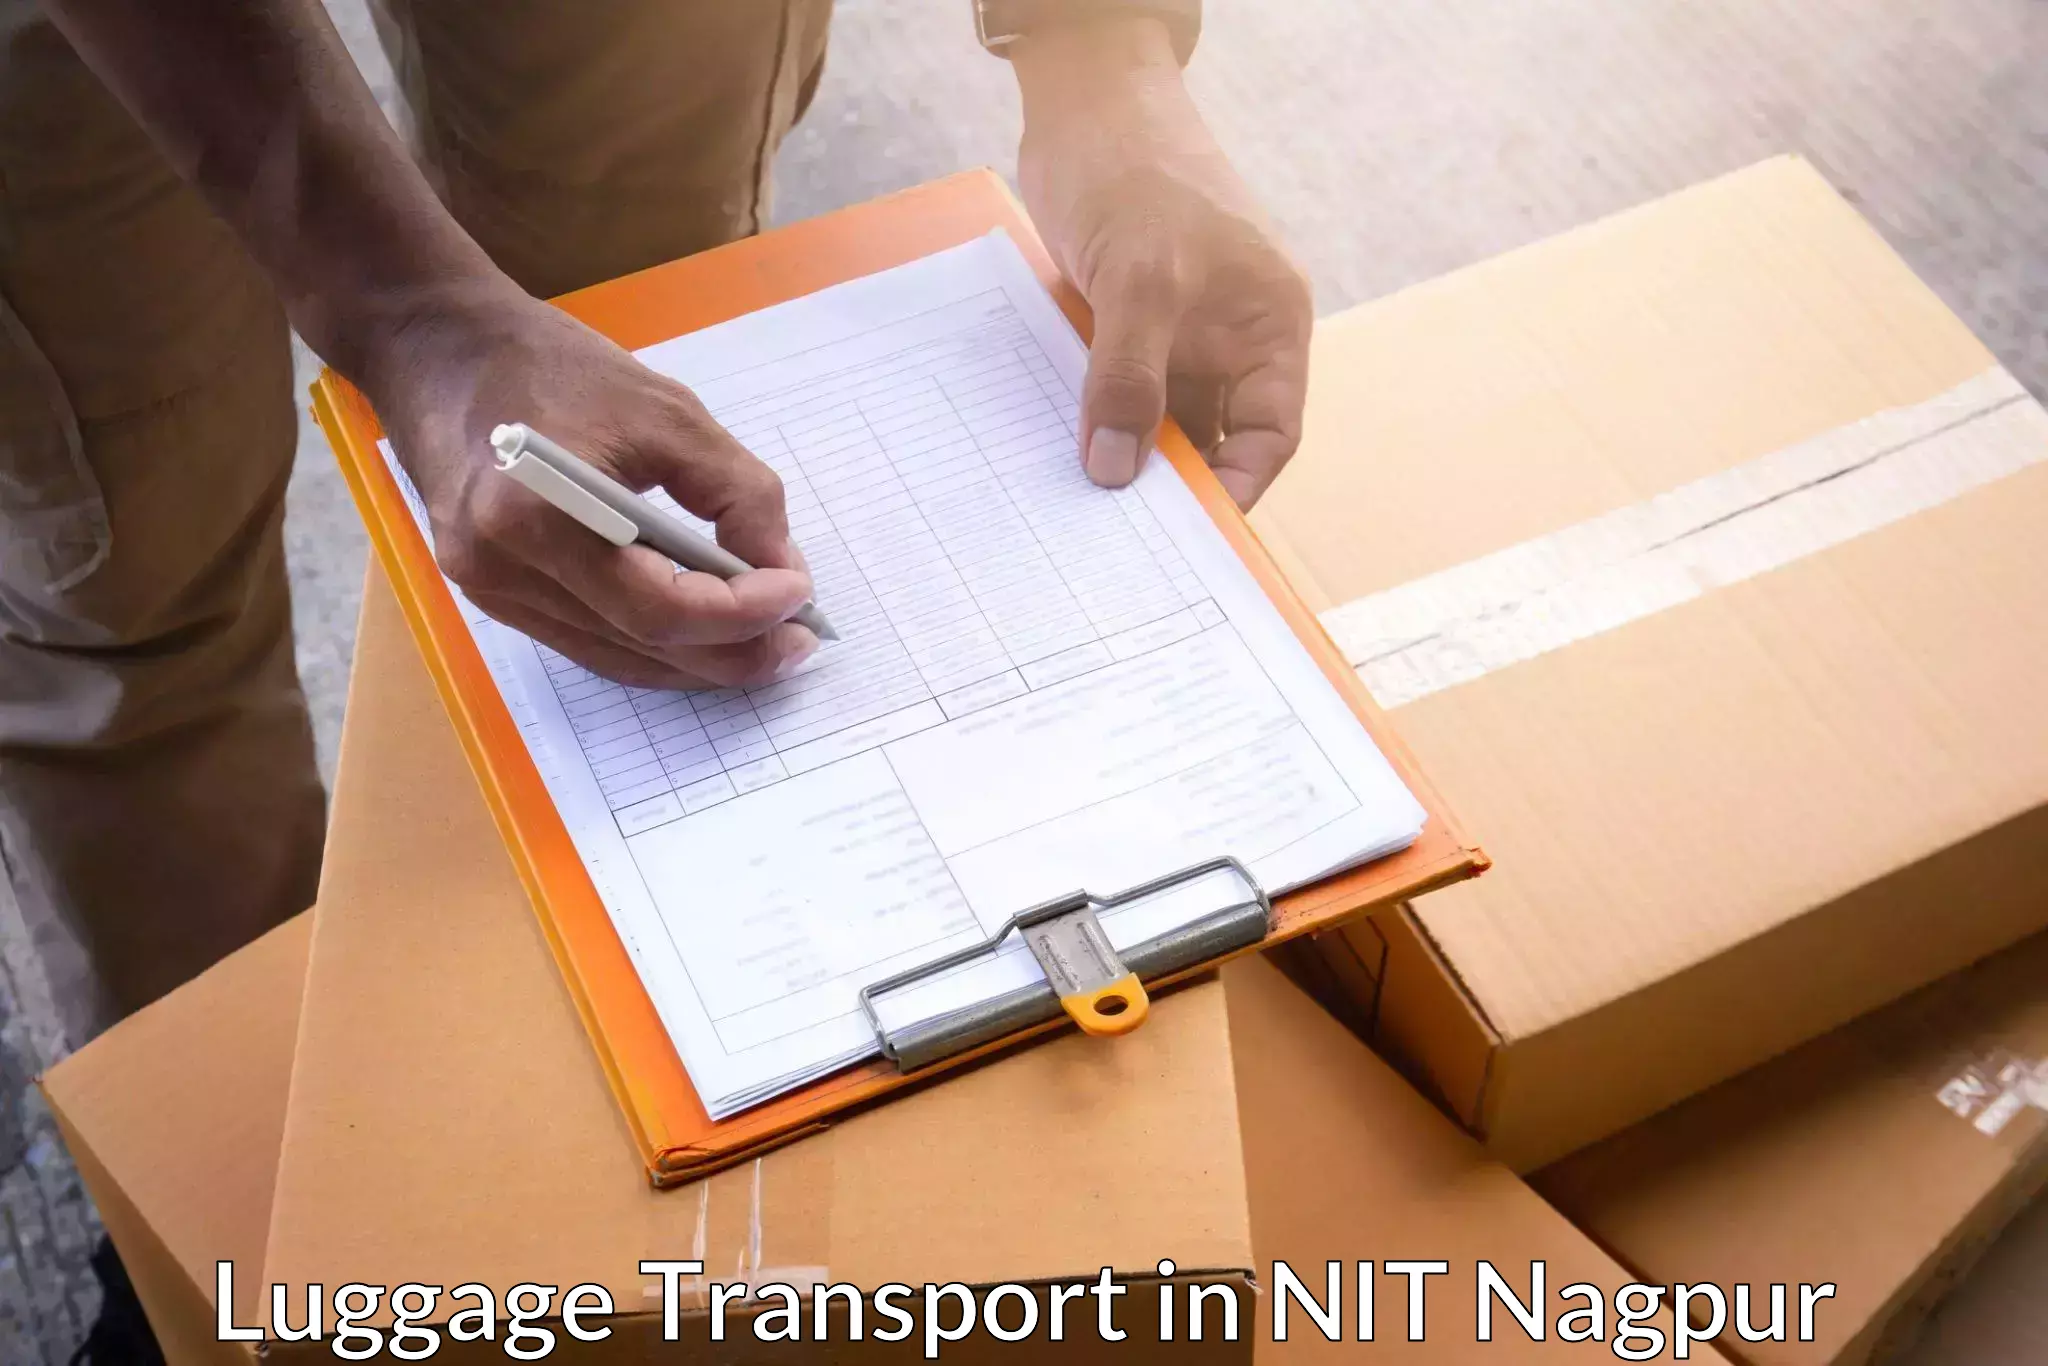 Regional luggage transport in NIT Nagpur